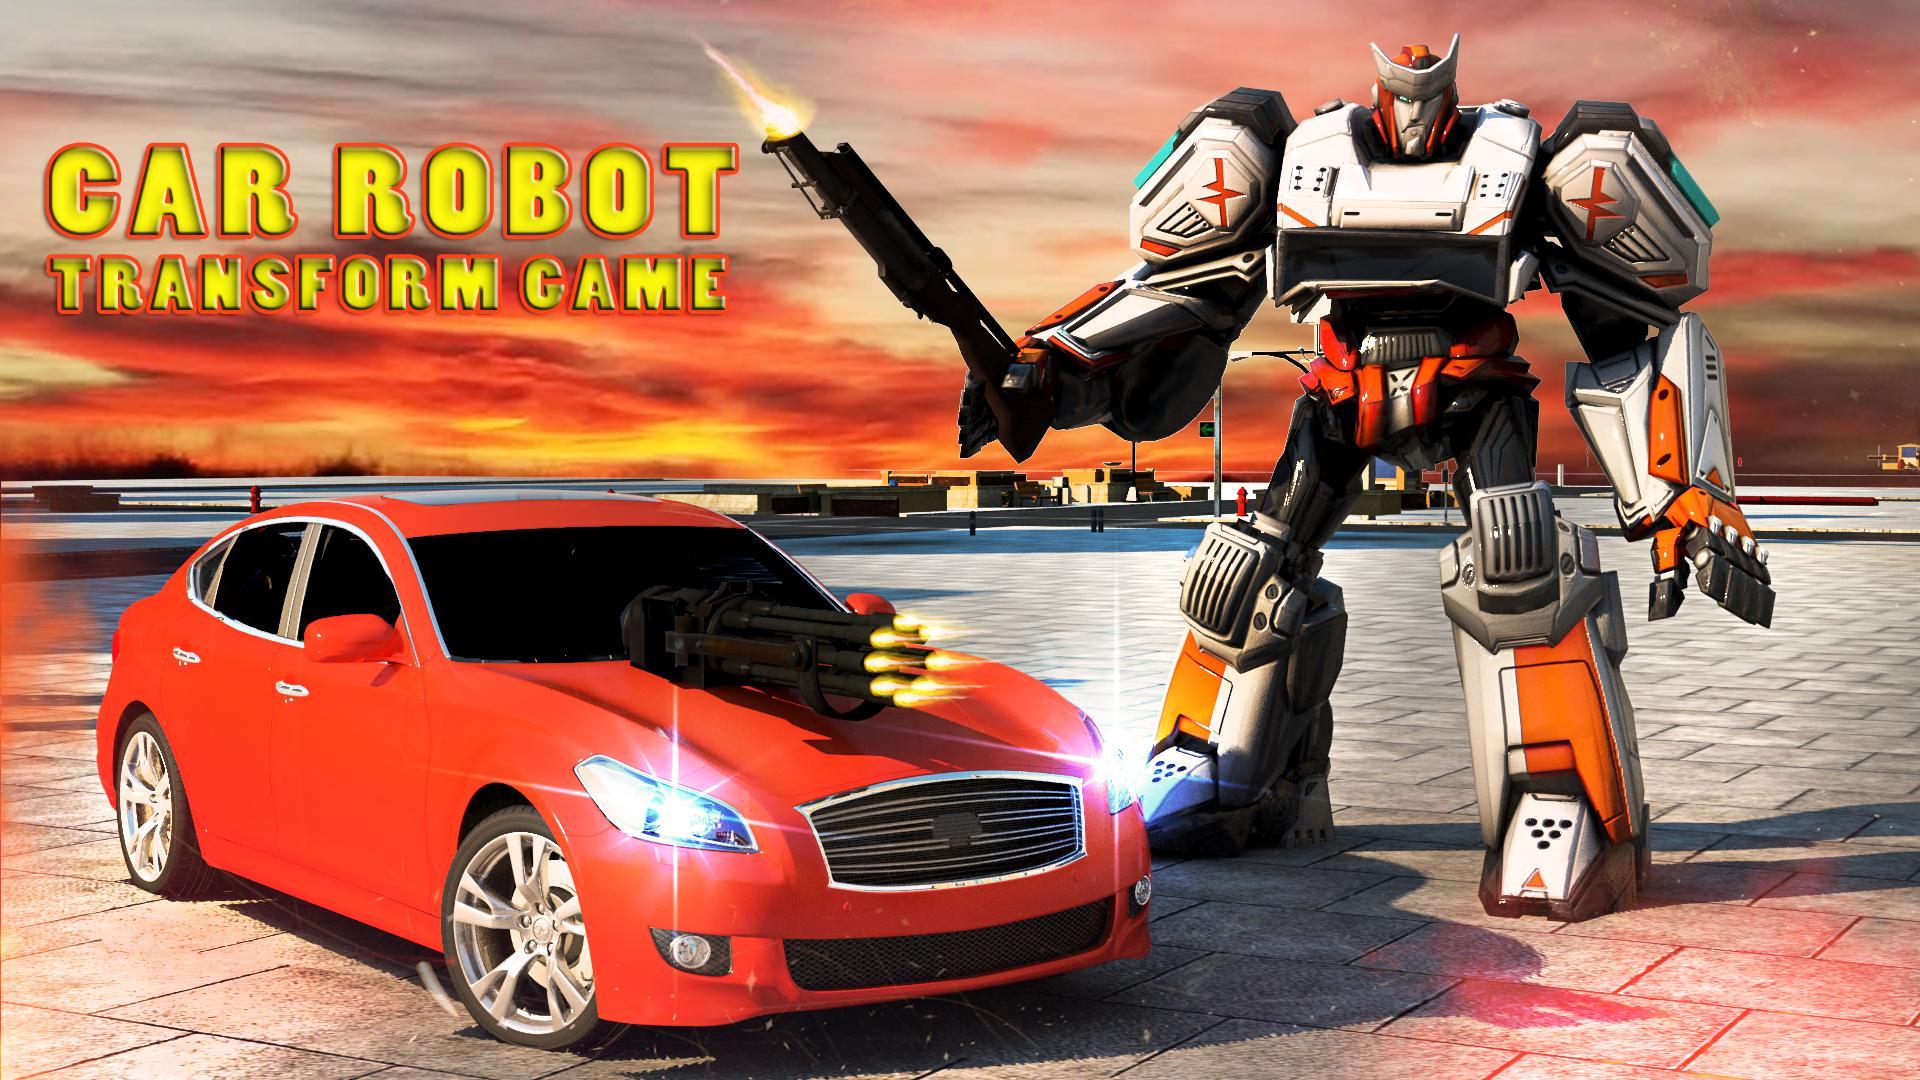 Robot car много денег. Лайтспид трансформер. Турбо скорость робот. Робот прогоняет. Робот гони.